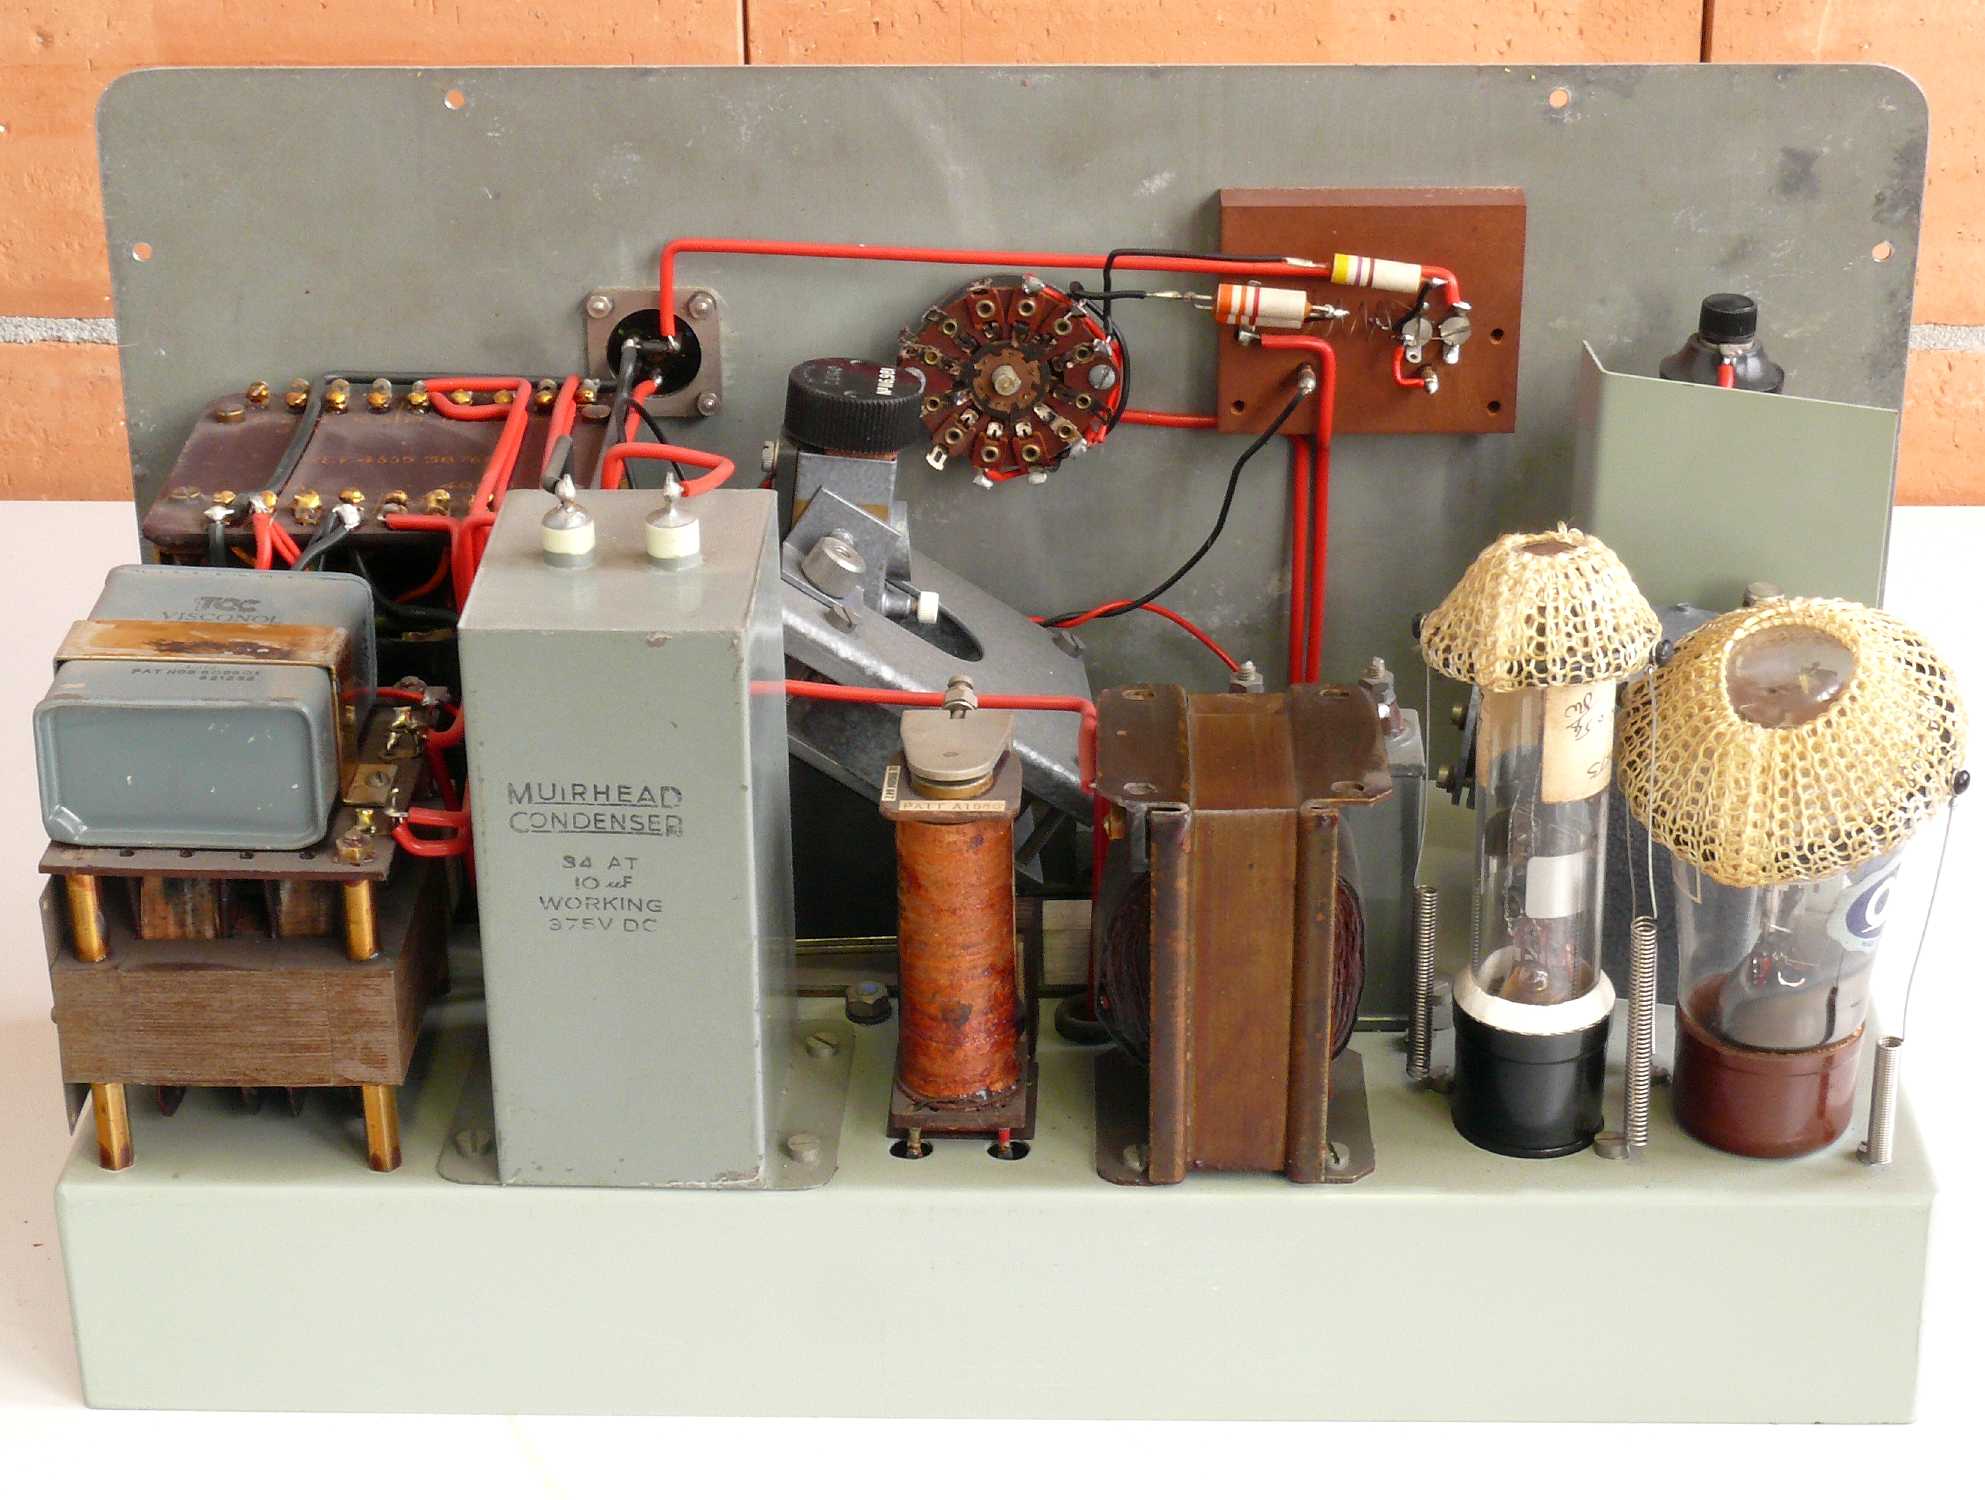 Amplificateur photoélectrique
(D.C. Amplifier Type 6035)